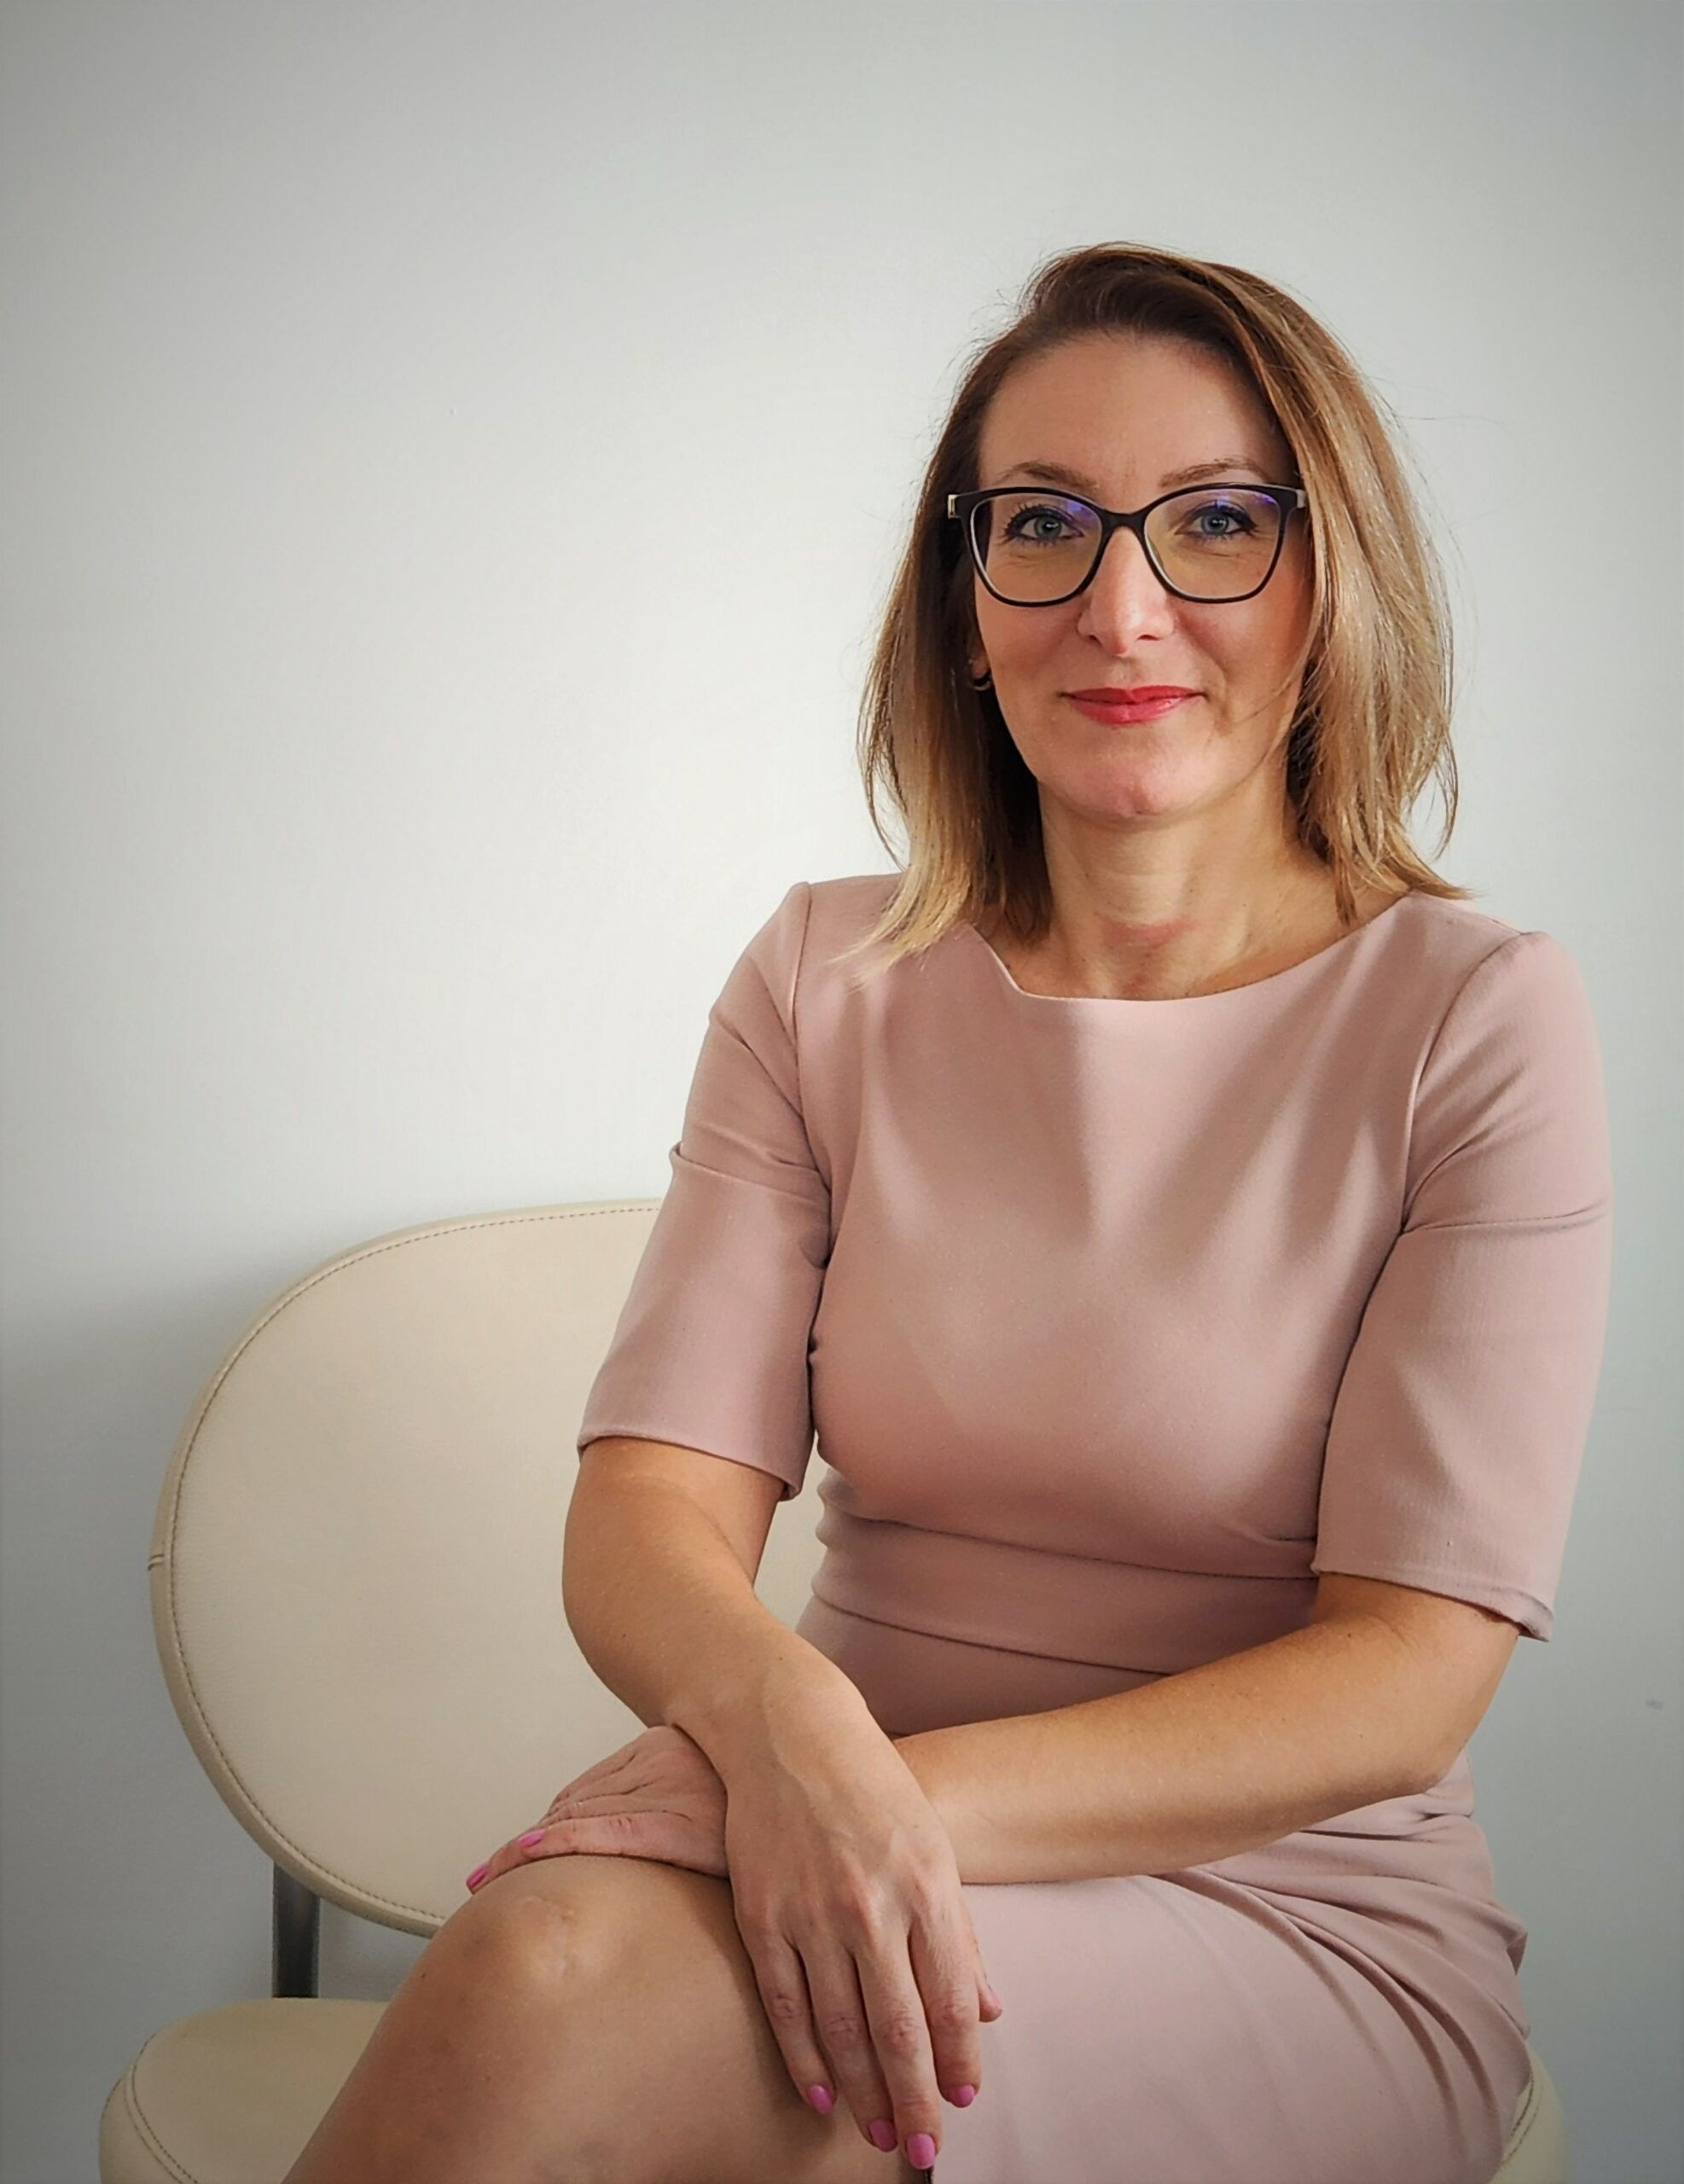 Надежда Василева е новият изпълнителен директор на Adecco България